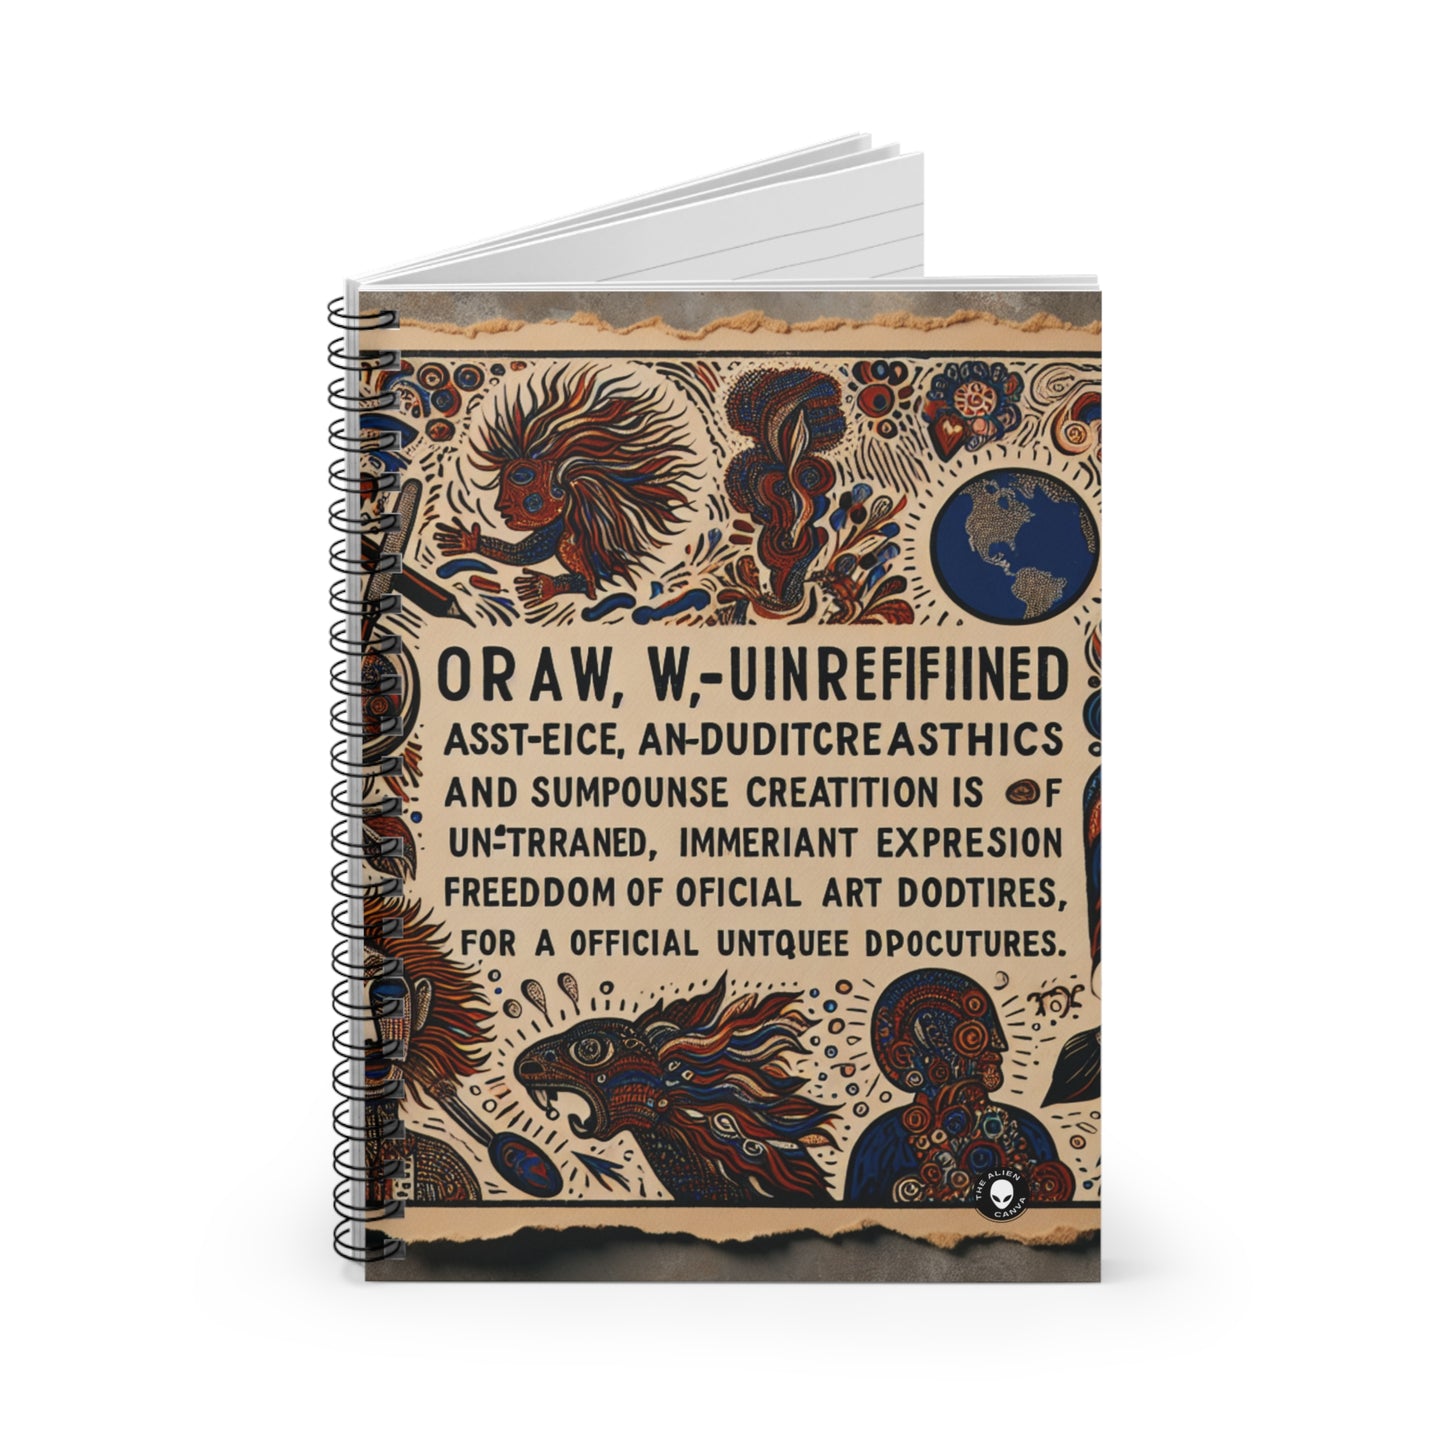 "Visiones del más allá: un paisaje onírico surrealista" - El cuaderno de espiral alienígena (línea reglada) Arte outsider